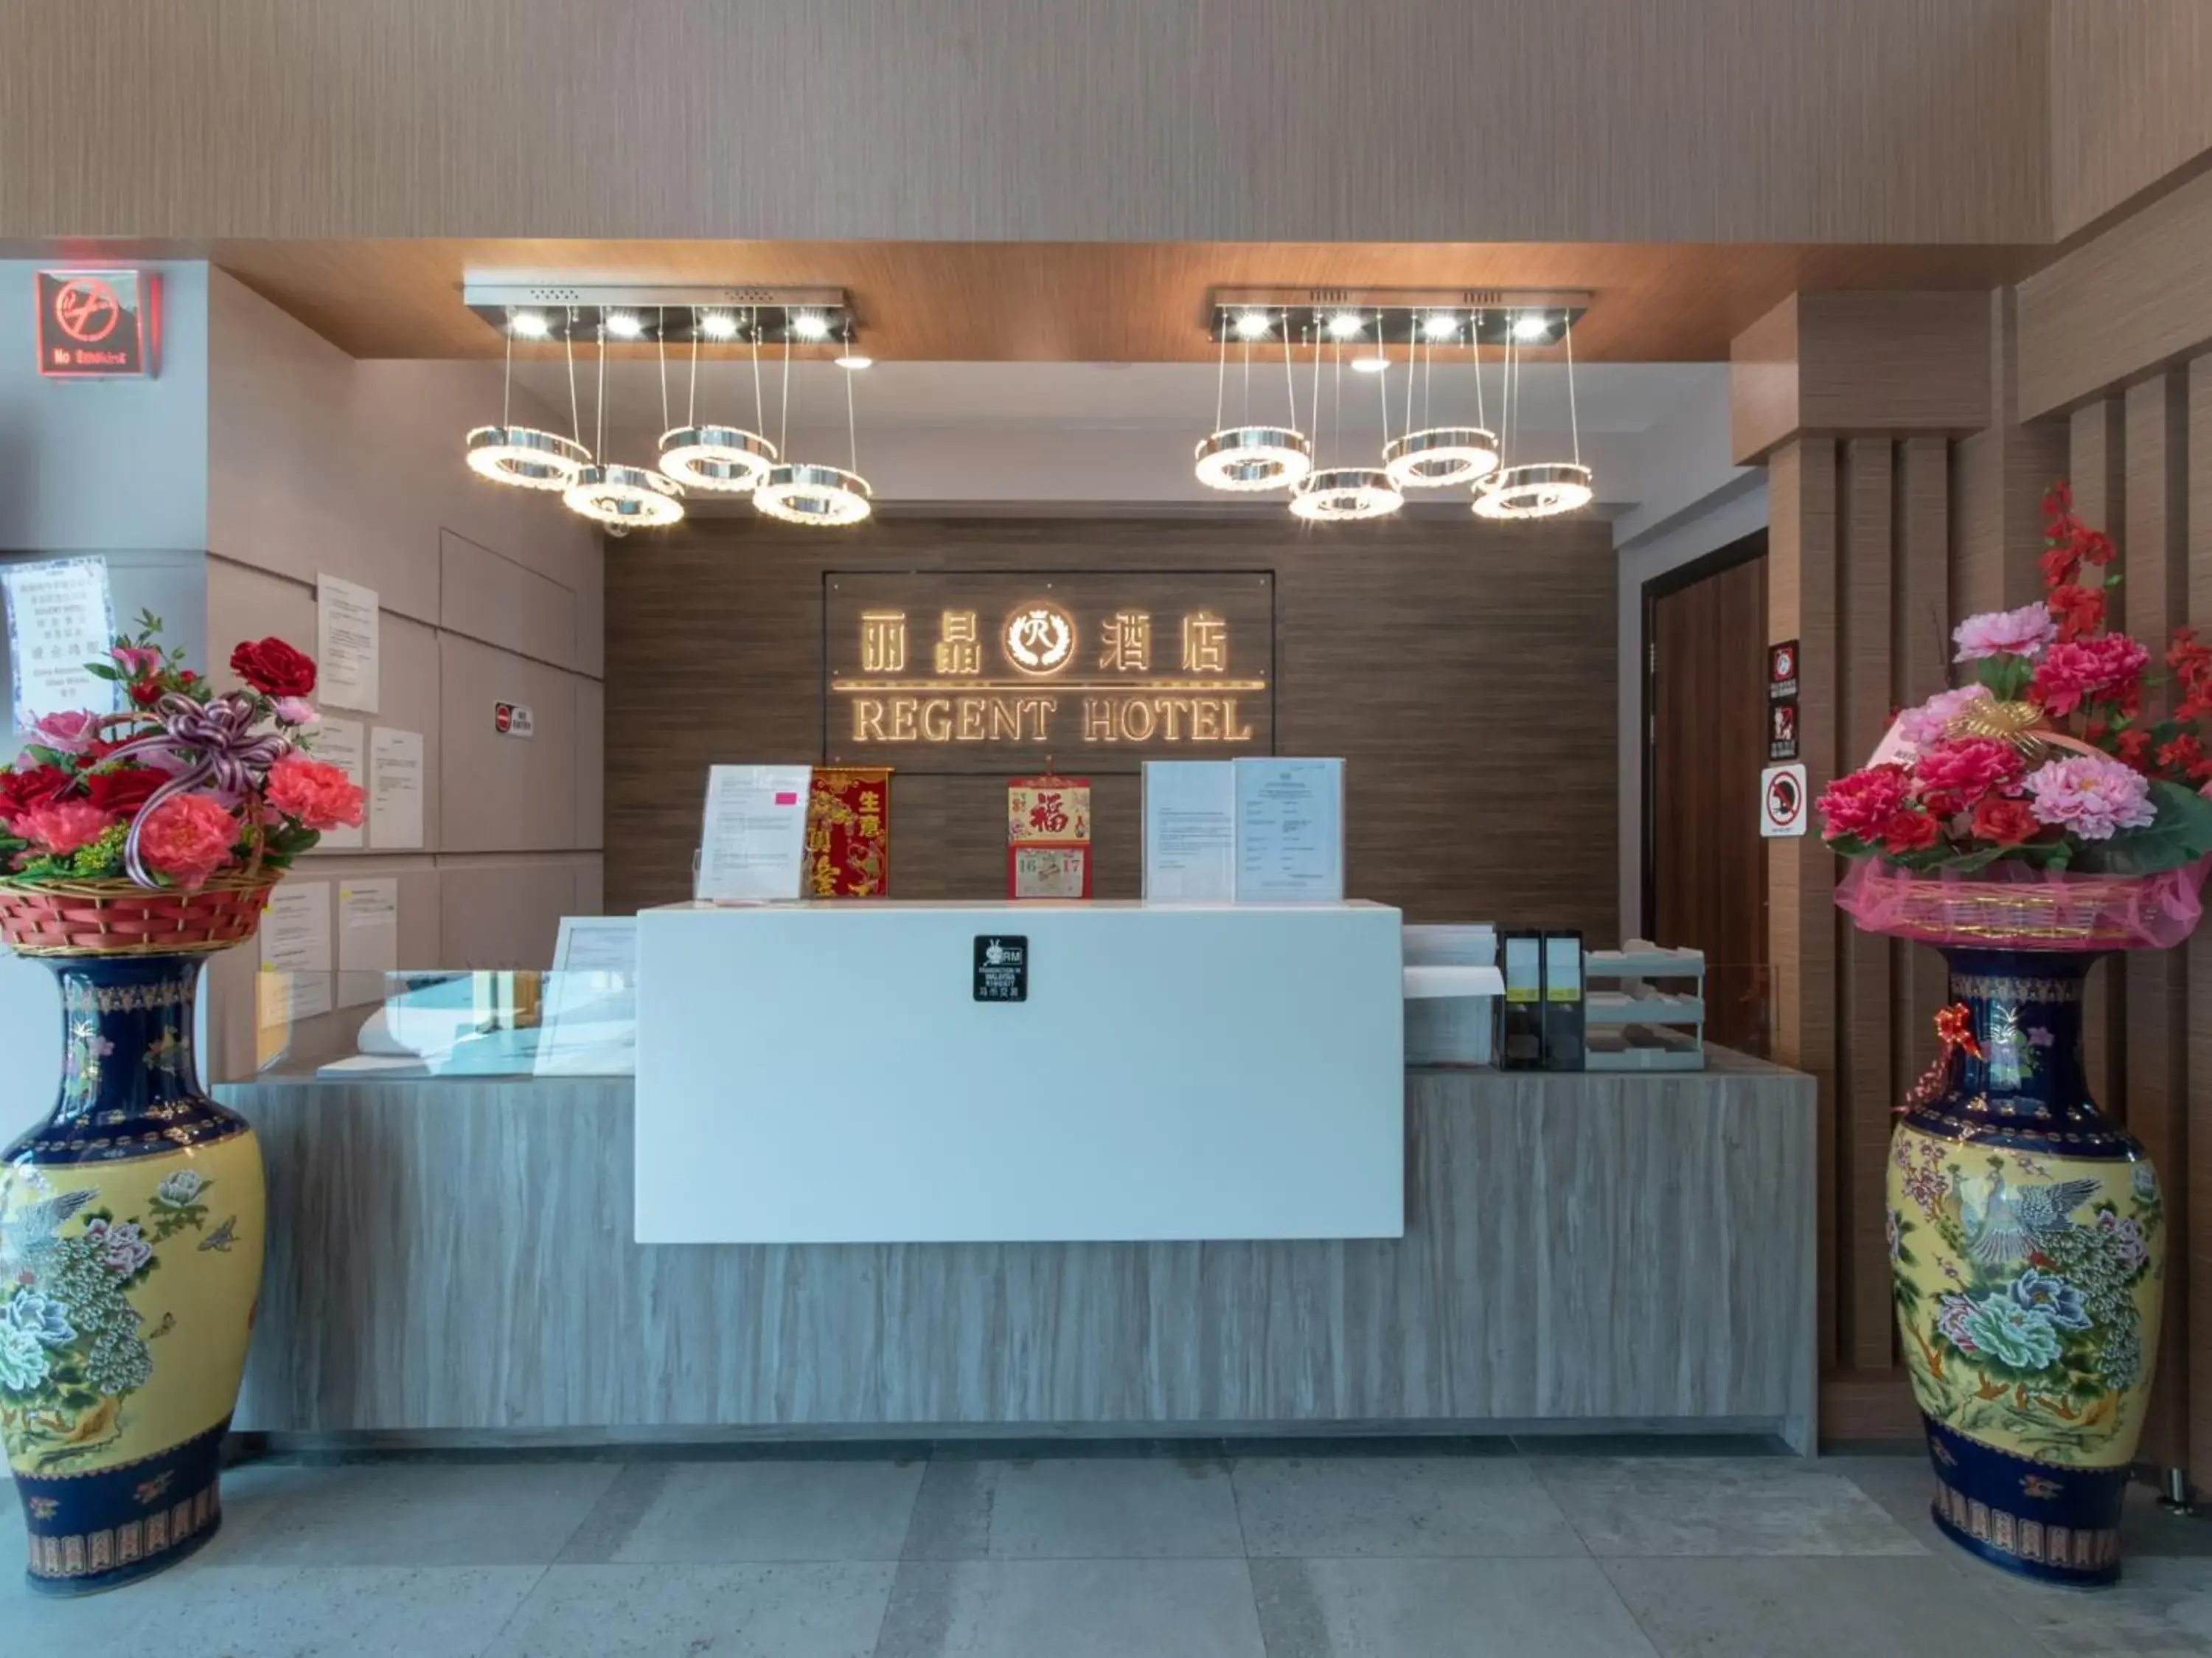 Lobby or reception, Lobby/Reception in OYO 89375 Regent Hotel